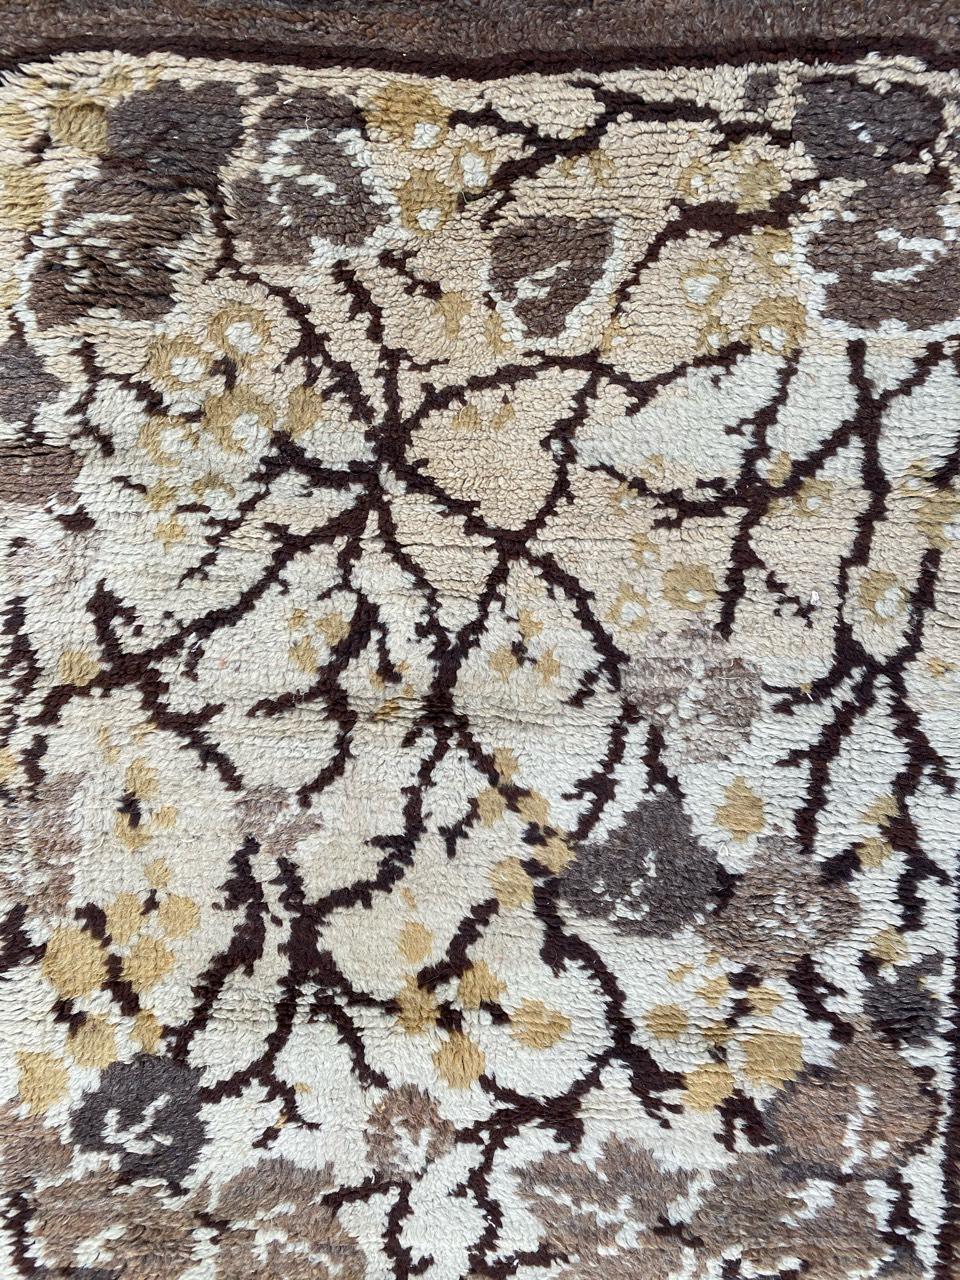 Schöner und dekorativer Teppich aus dem frühen 20. Jahrhundert mit Art-Déco-Design und grauen, gelben, beigen und braunen Farben, ganz und gar mit Wollsamt auf Wollfond geknüpft.

✨✨✨
